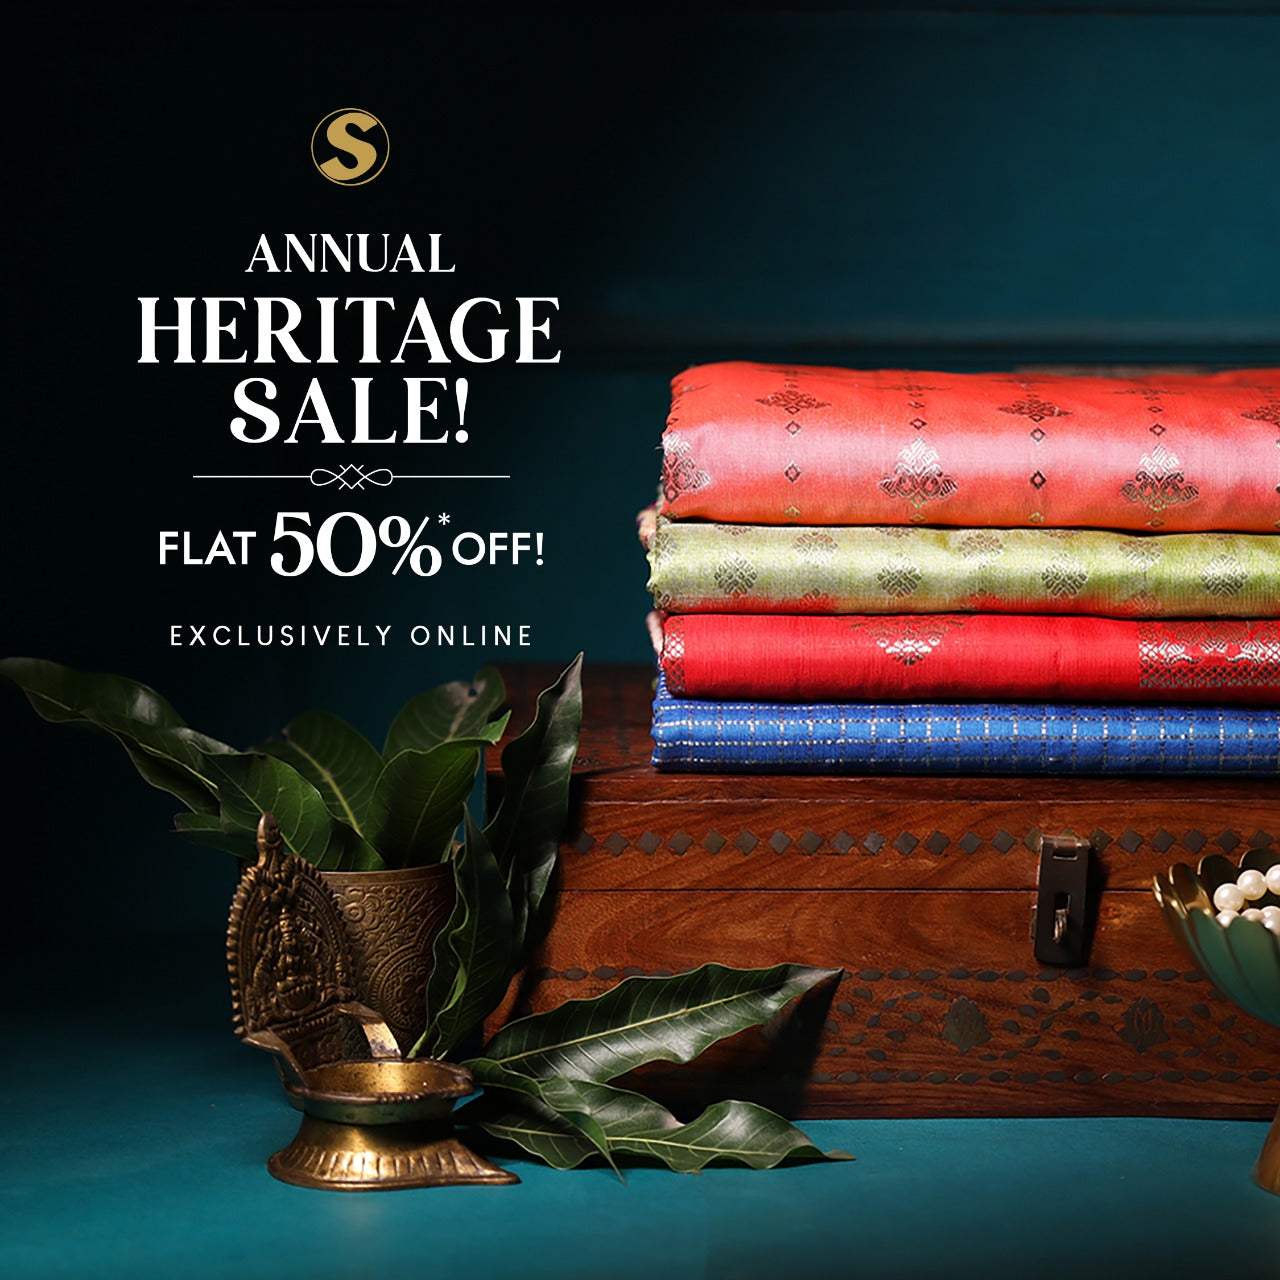 Singhanias Annual Heritage Sale 2022 - Singhania's